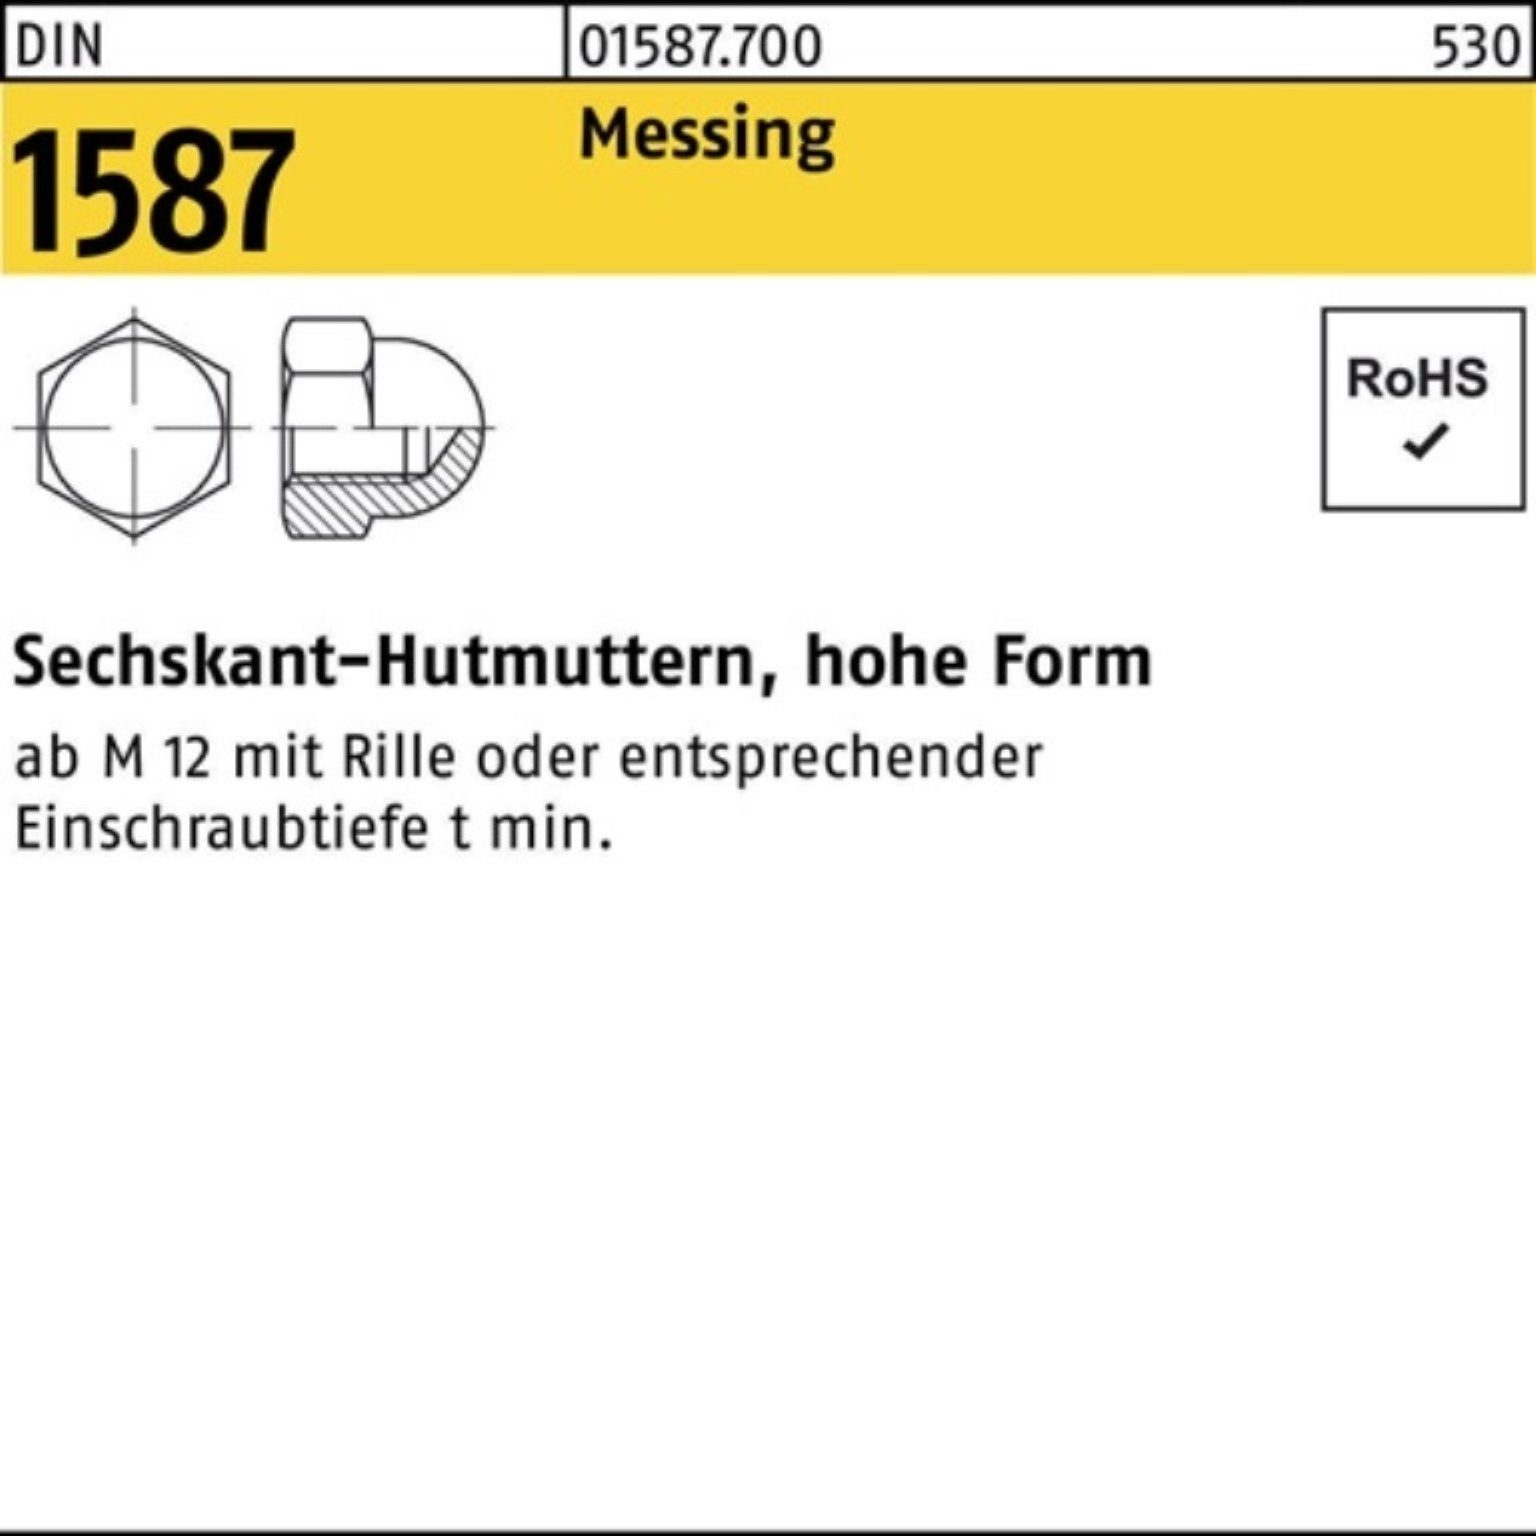 Stück M3 Reyher Hutmutter 1000 1587 DIN 1000er Pack Sechskanthutmutter DIN 158 Messing